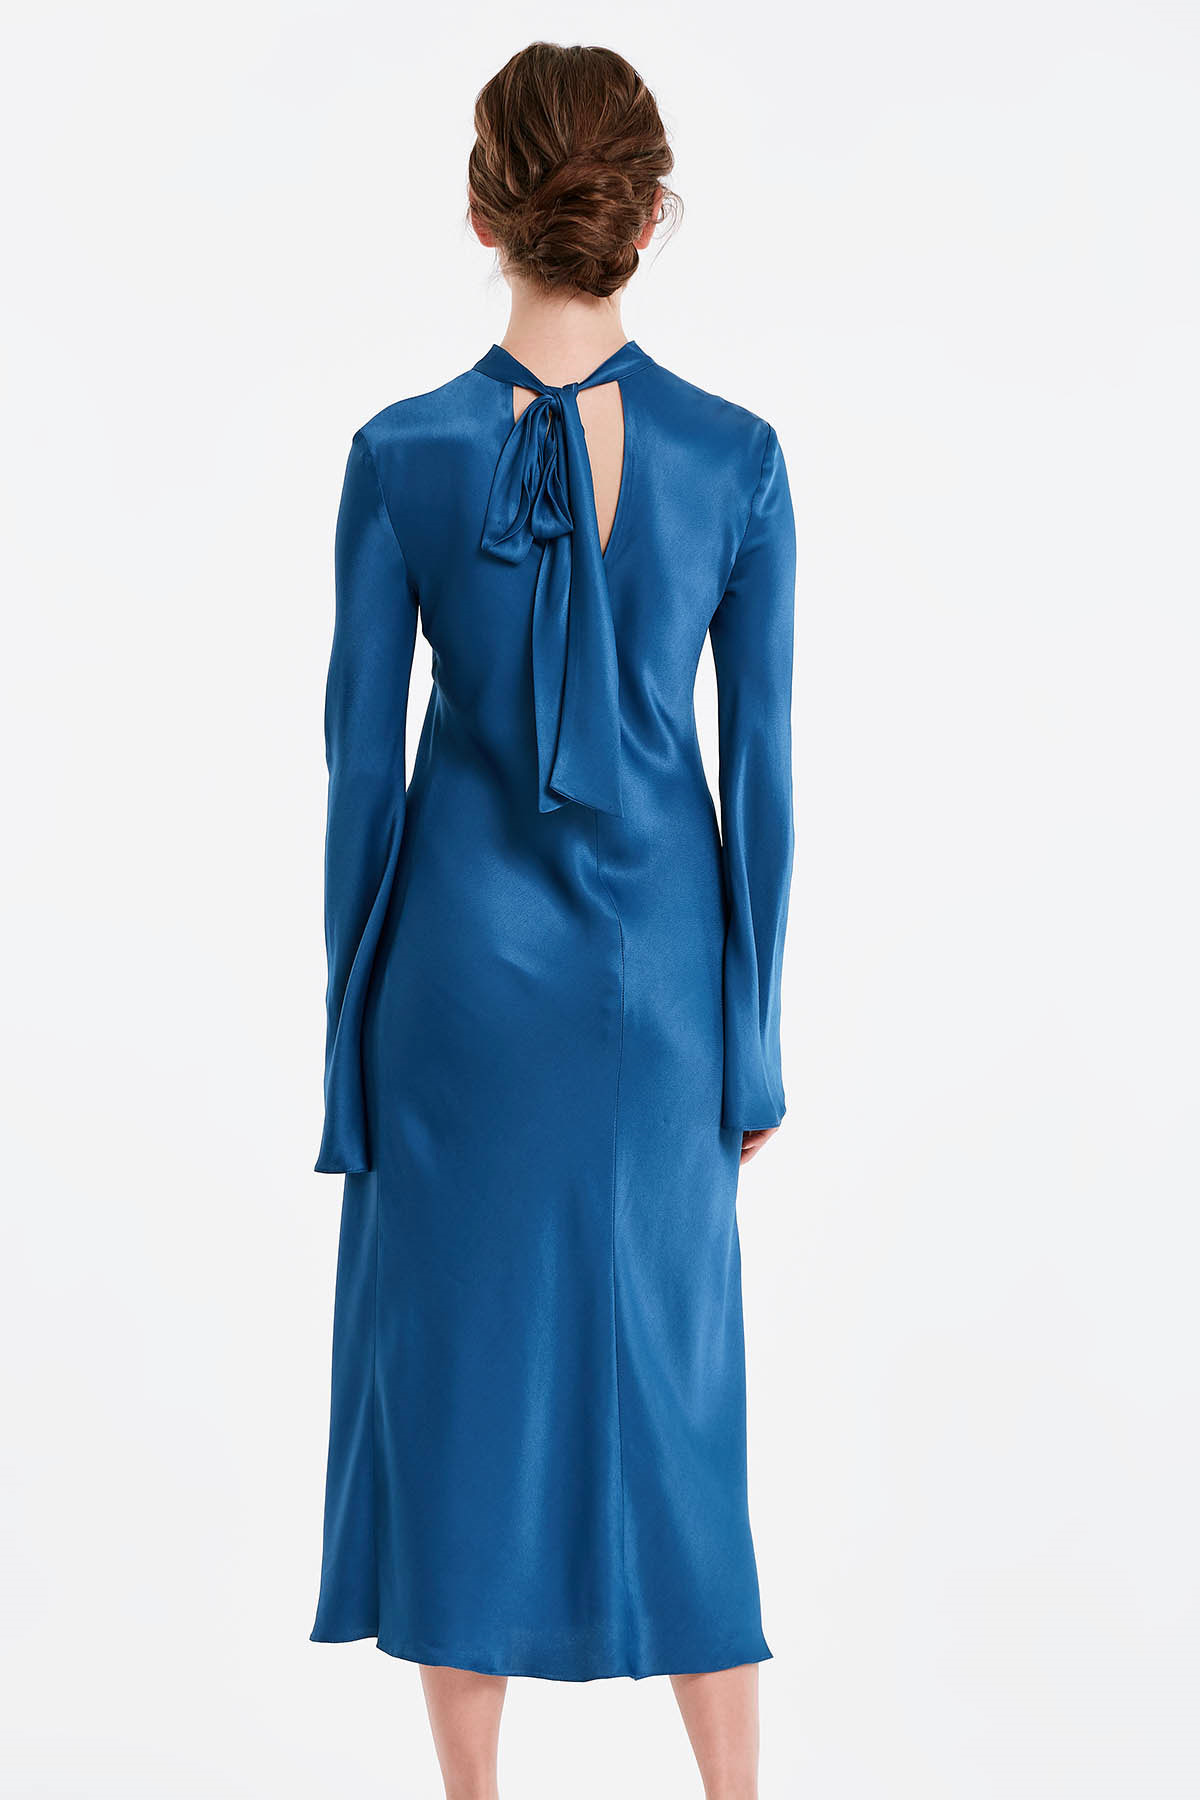 Синя сукня з бантом на спині, рукав кльош, фото 3